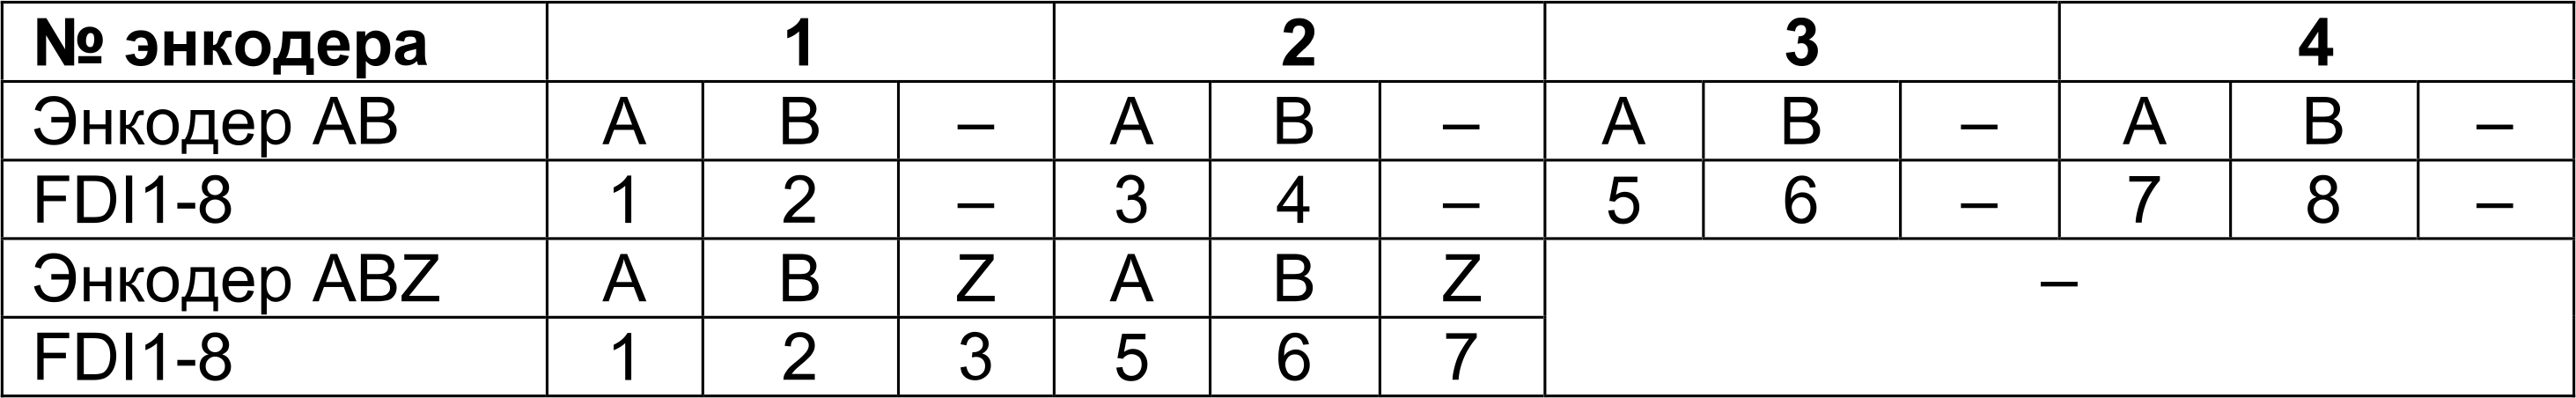 Таблица подключения энкодеров p-n-p и n-p-n типа